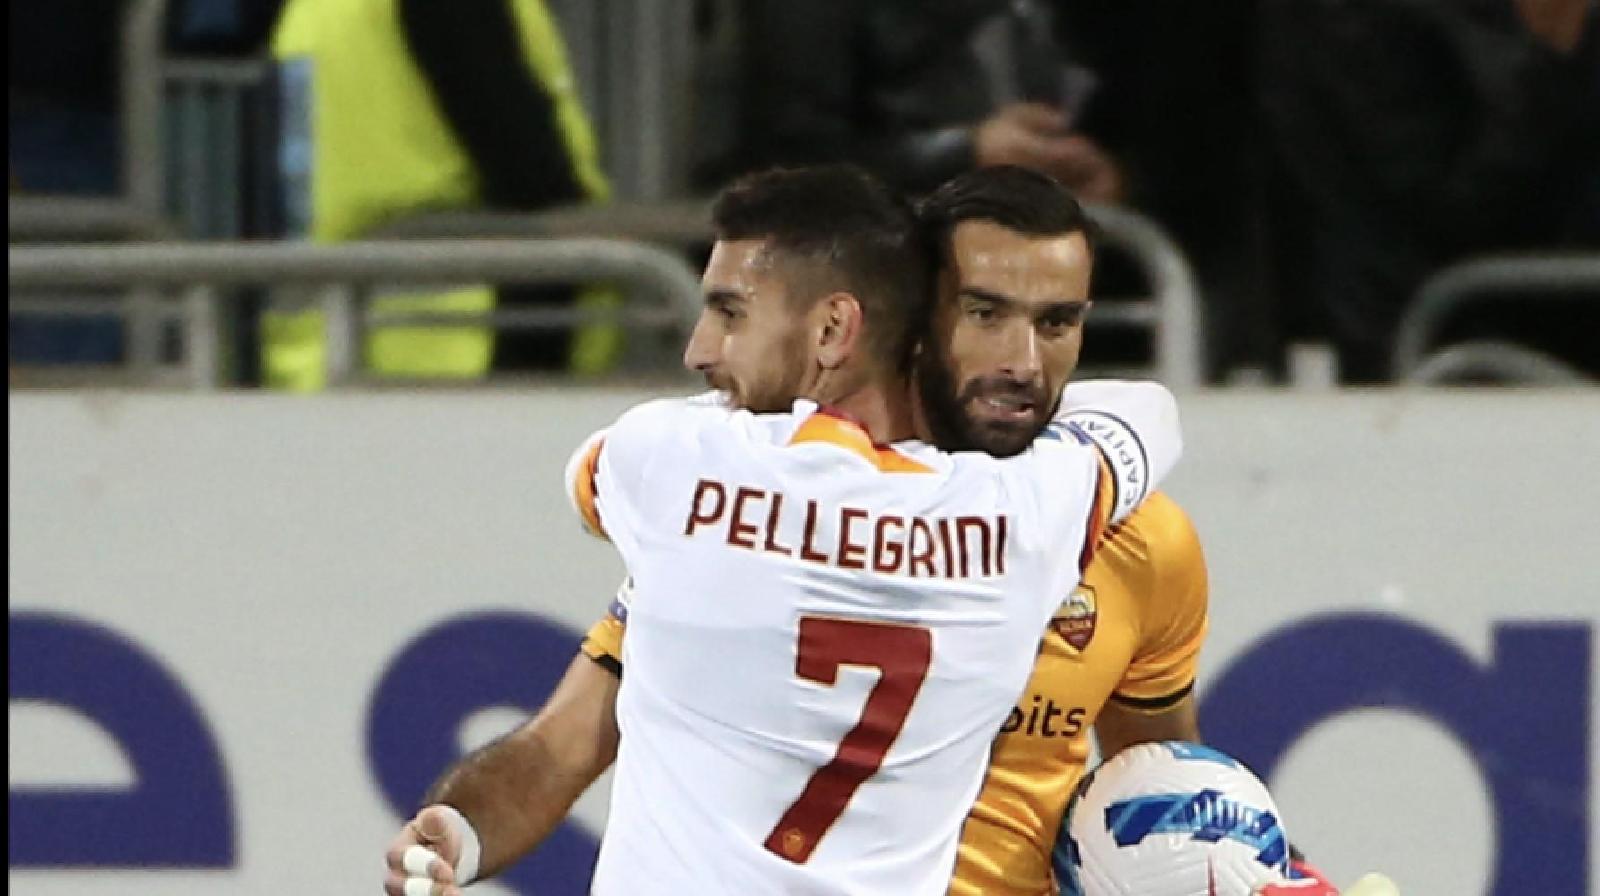 Pellegrini abbraccia Rui Patricio (Getty Images)